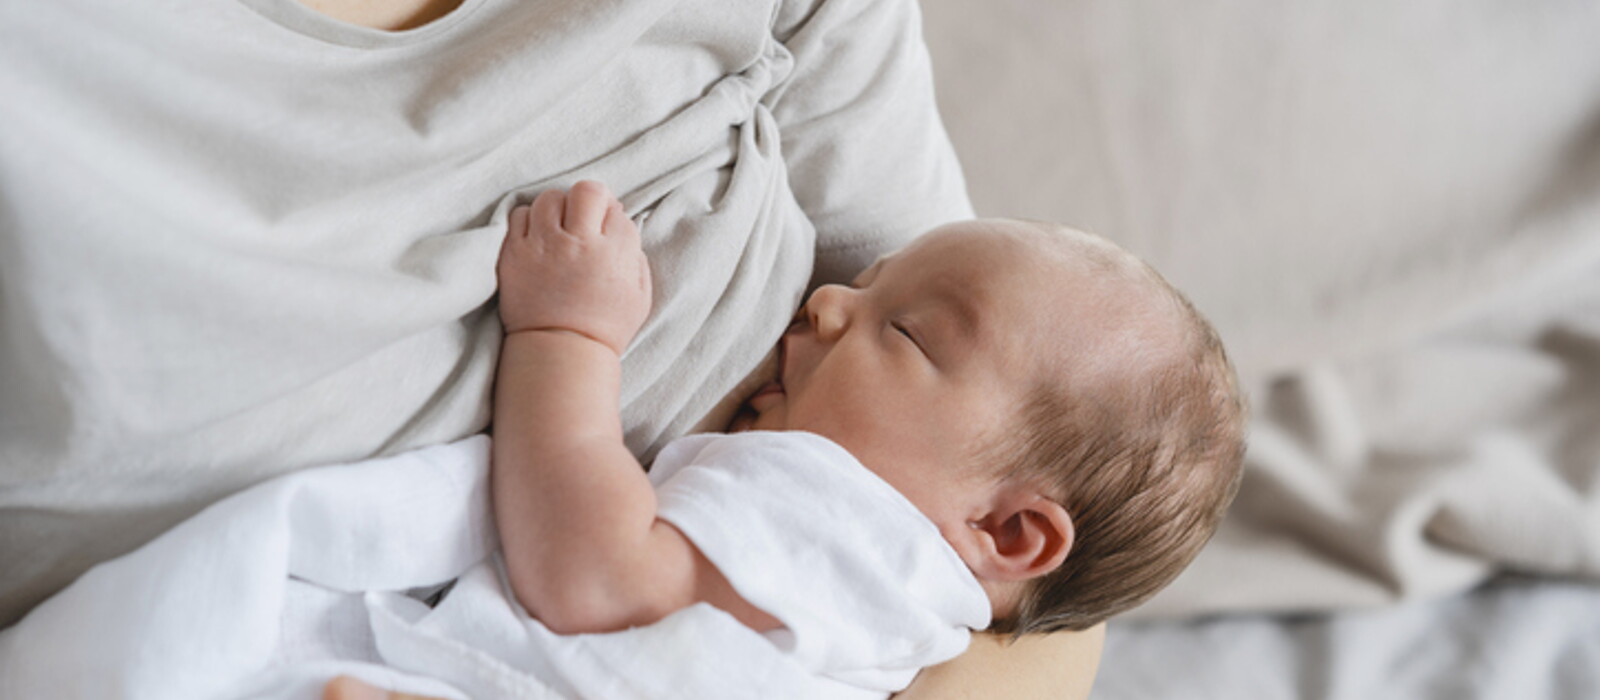 ตารางกินนมทารก ลูกควรกินนมแม่วันละกี่ครั้ง ปริมาณเท่าไหร่